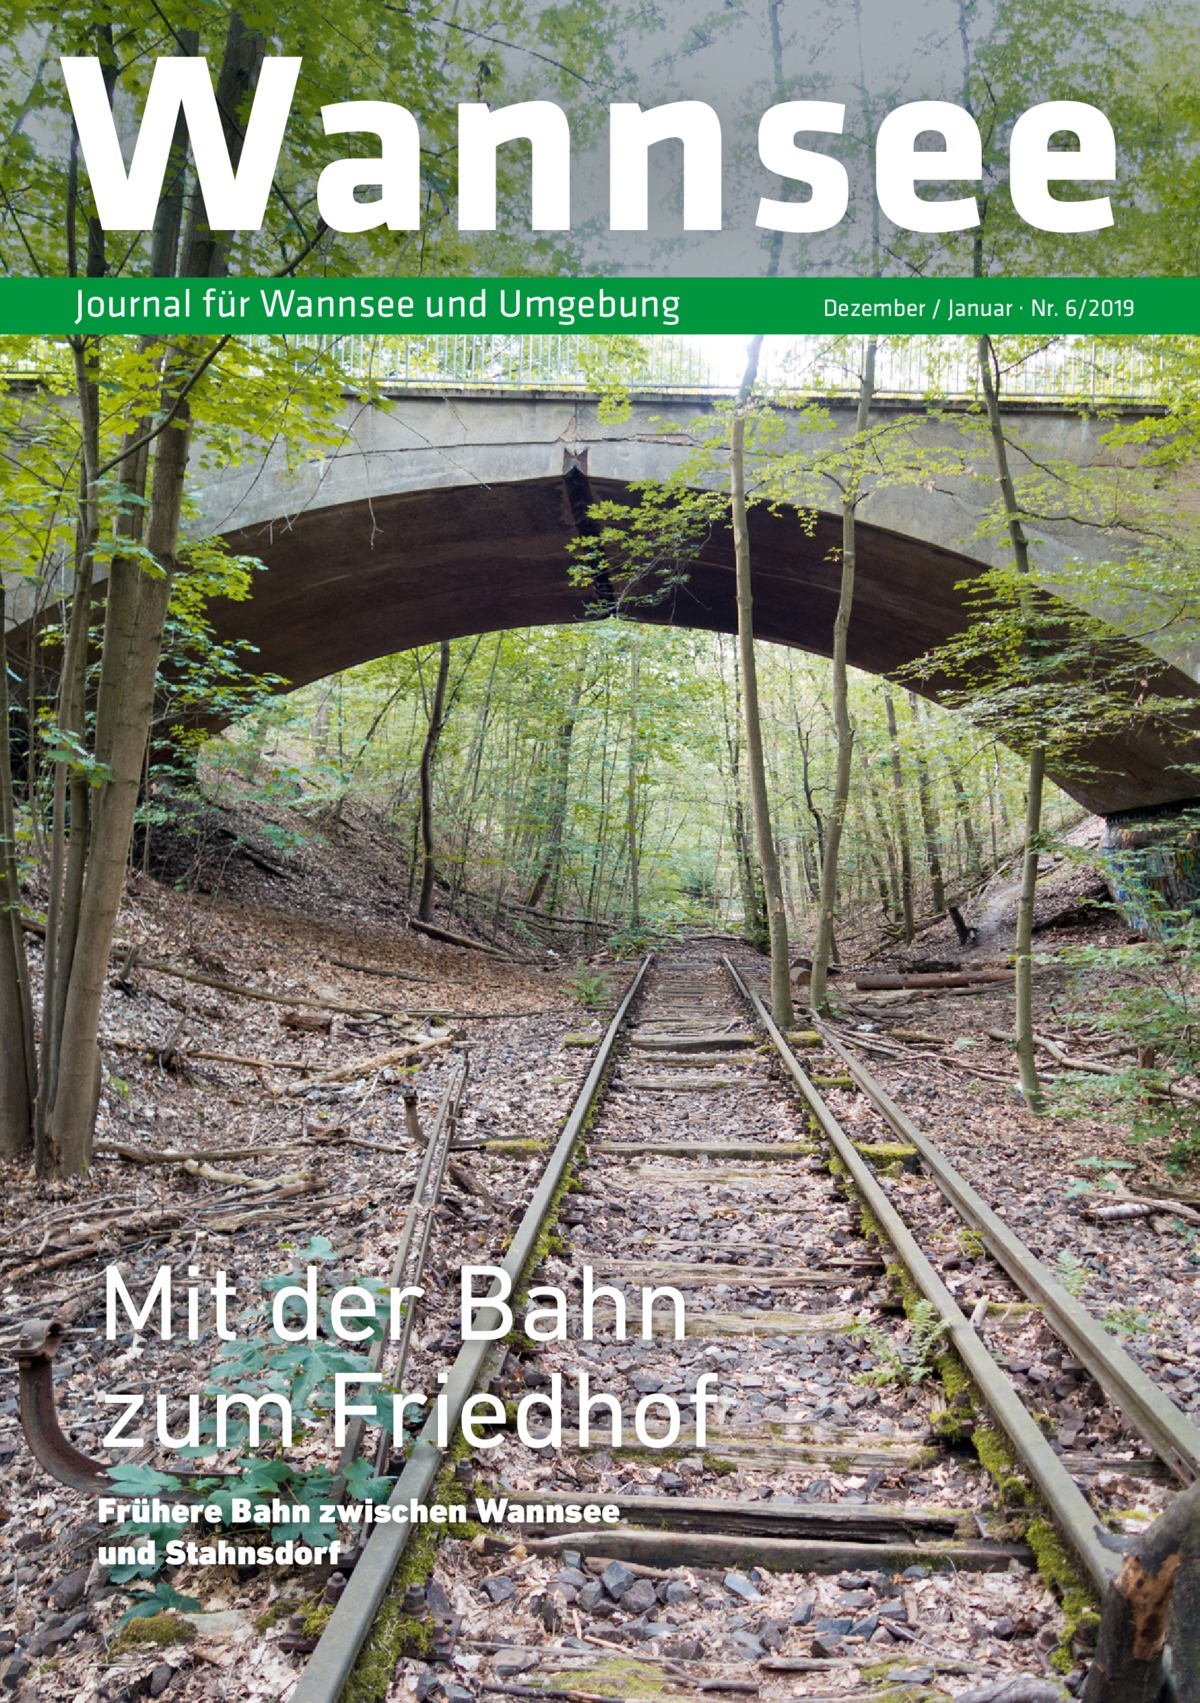 Wannsee Journal für Wannsee und Umgebung  Mit der Bahn zum Friedhof Frühere Bahn zwischen Wannsee und Stahnsdorf  Dezember / Januar · Nr. 6/2019